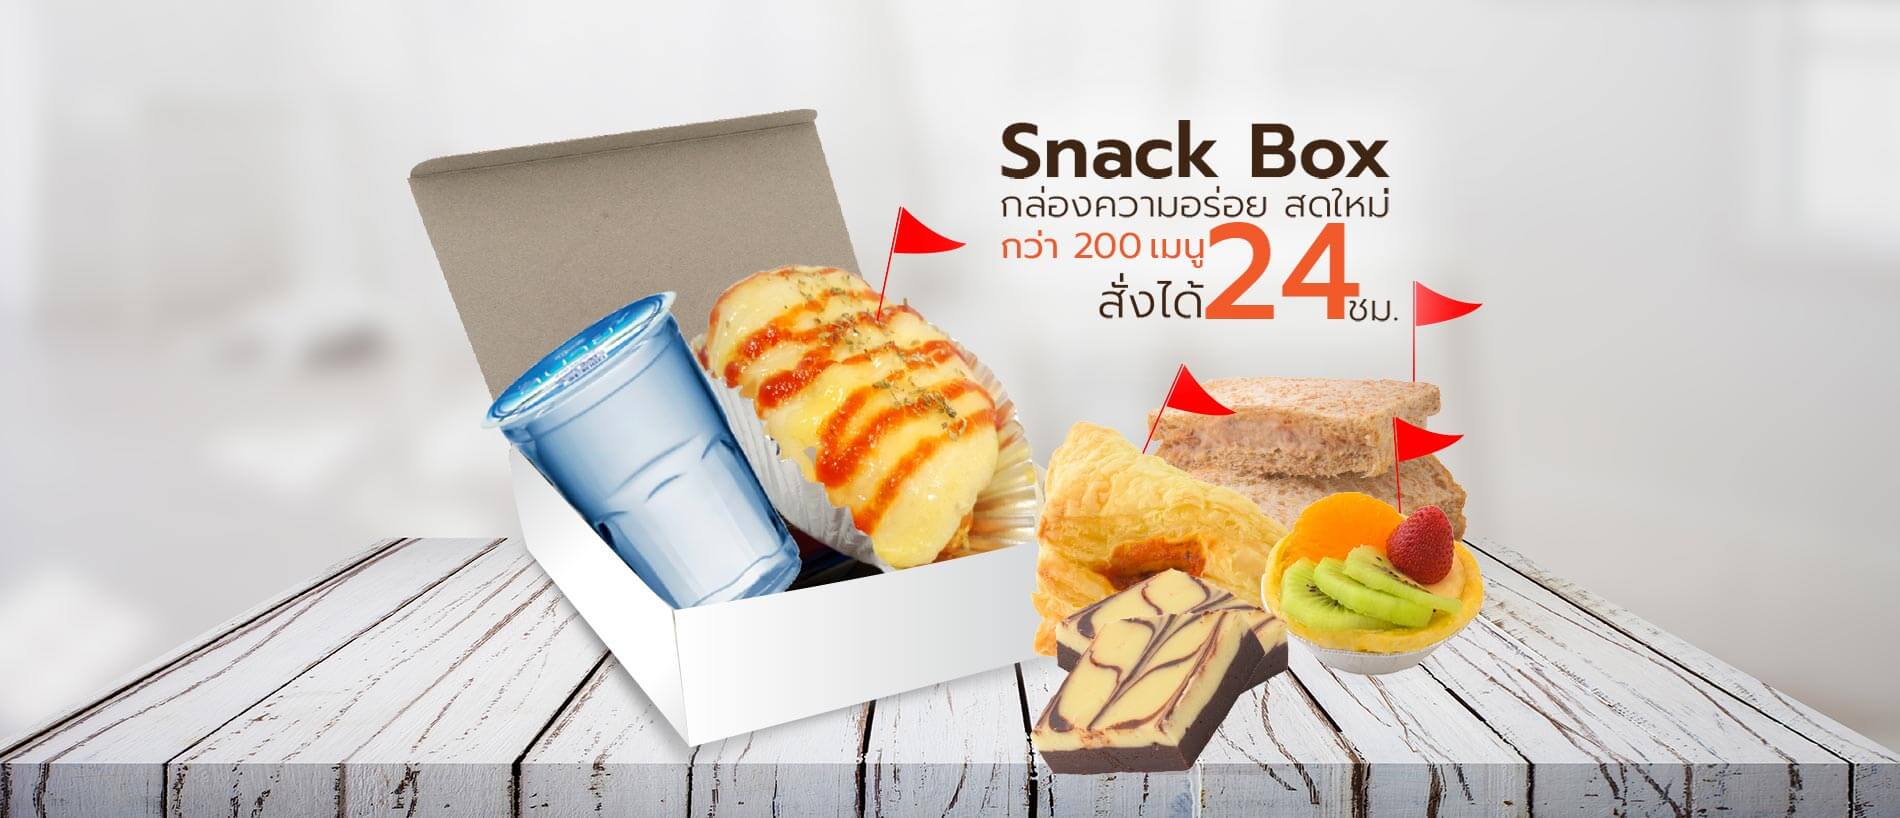 Snack Box ราคา 30 บาท ขนมจัดเบรค ชุดอิ่มเซฟวิ่ง